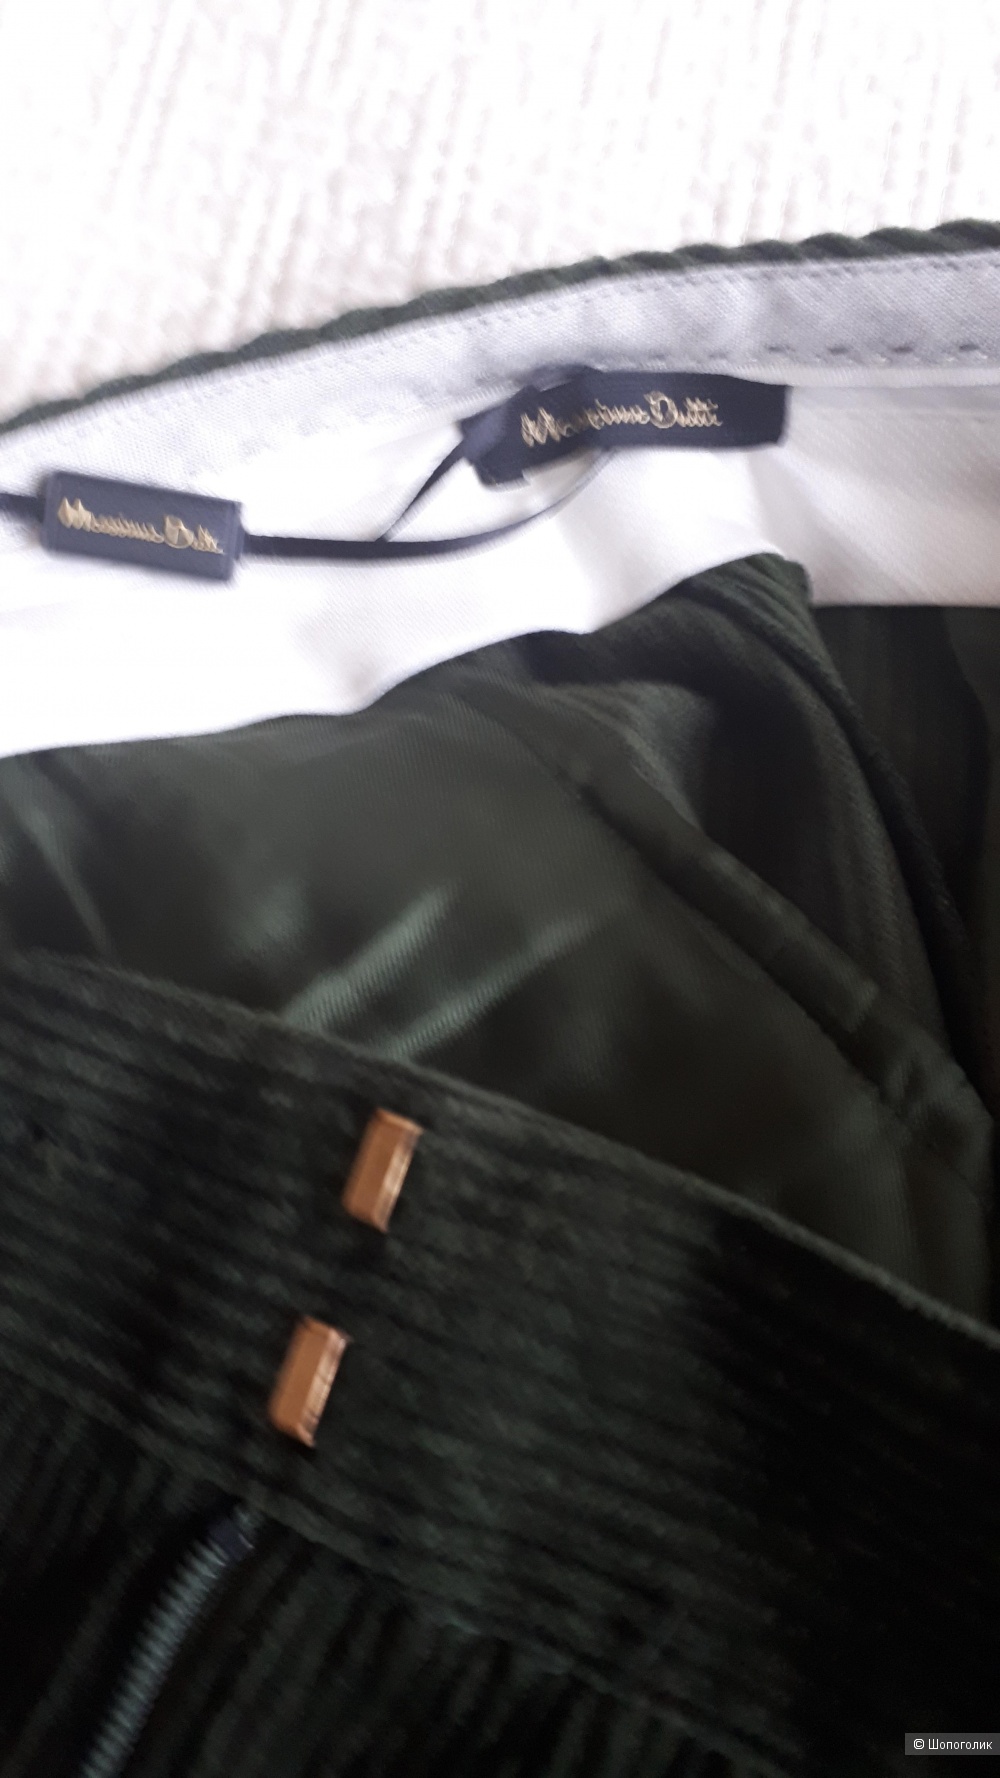 Вельветовые укороченные брюки Massimo Dutti  42  размер евр.